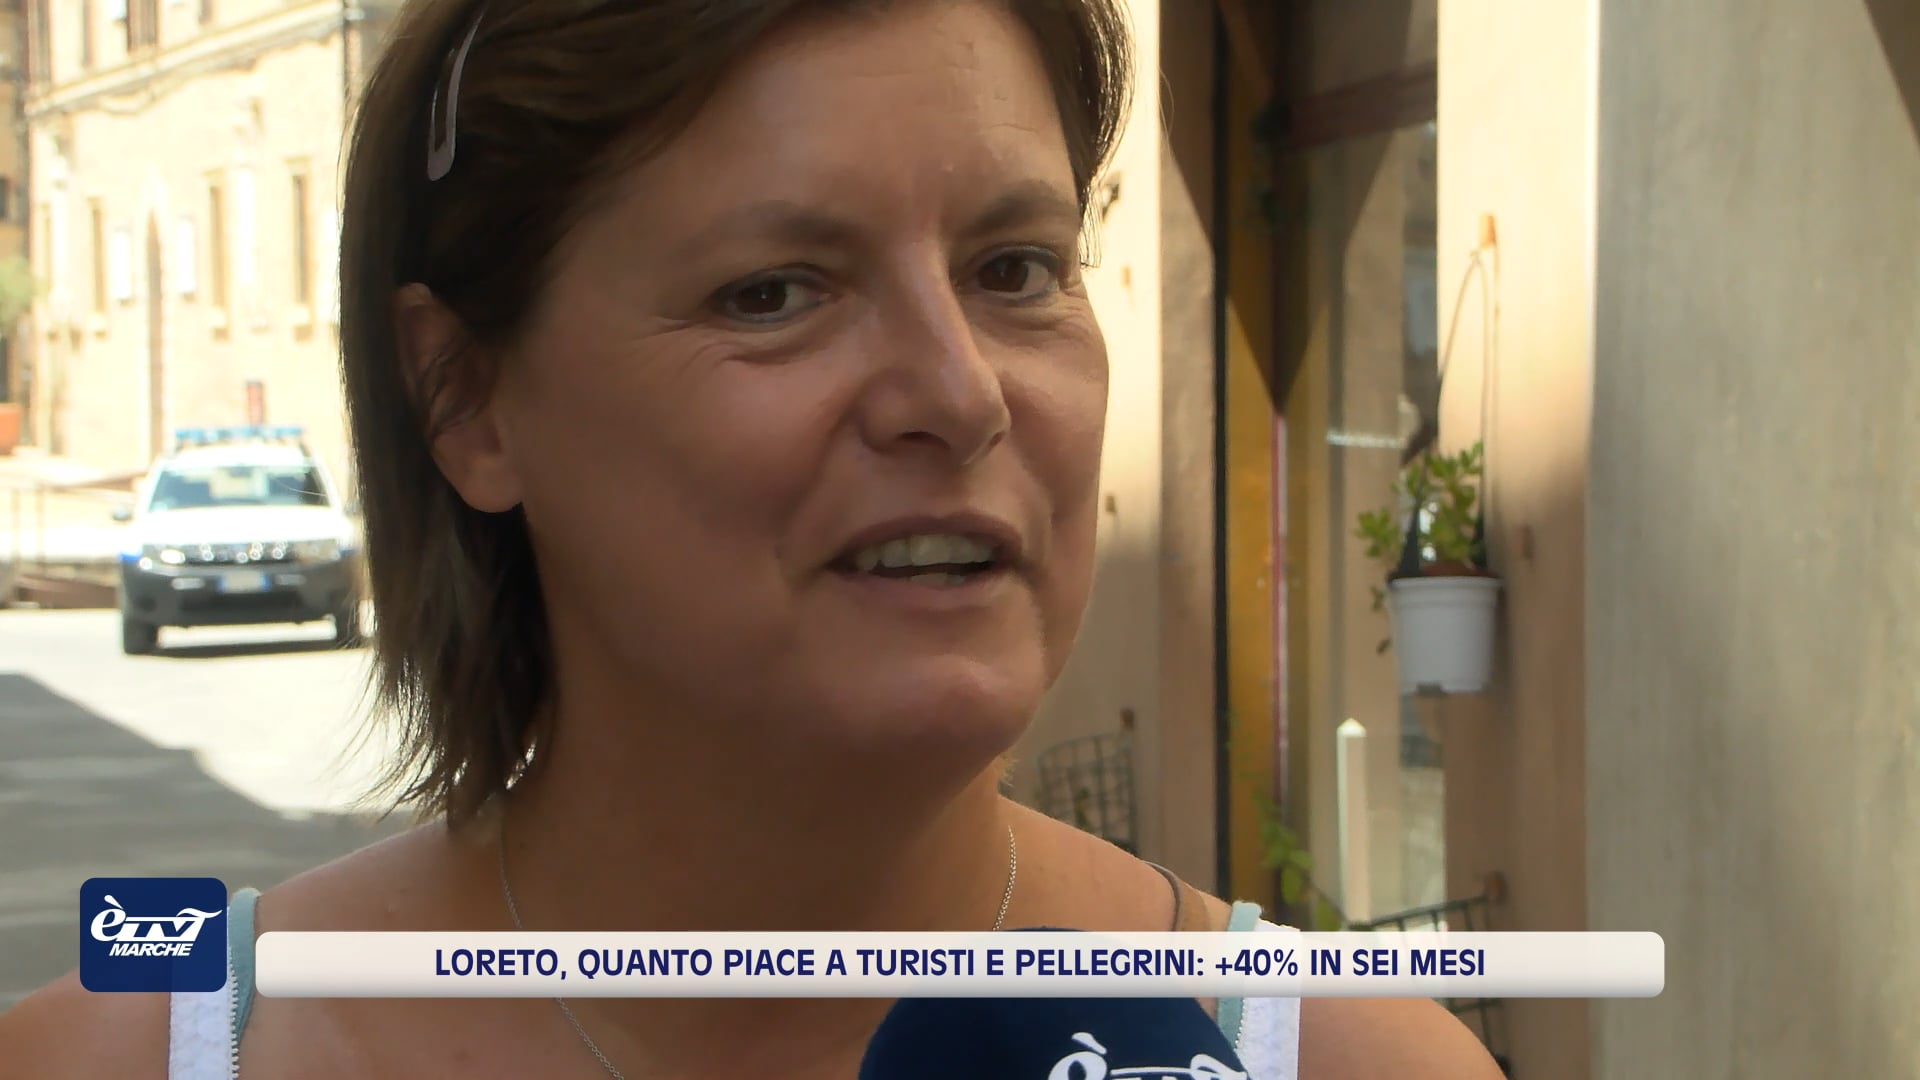 Loreto, quanto piace a turisti e pellegrini: +40% in sei mesi - VIDEO